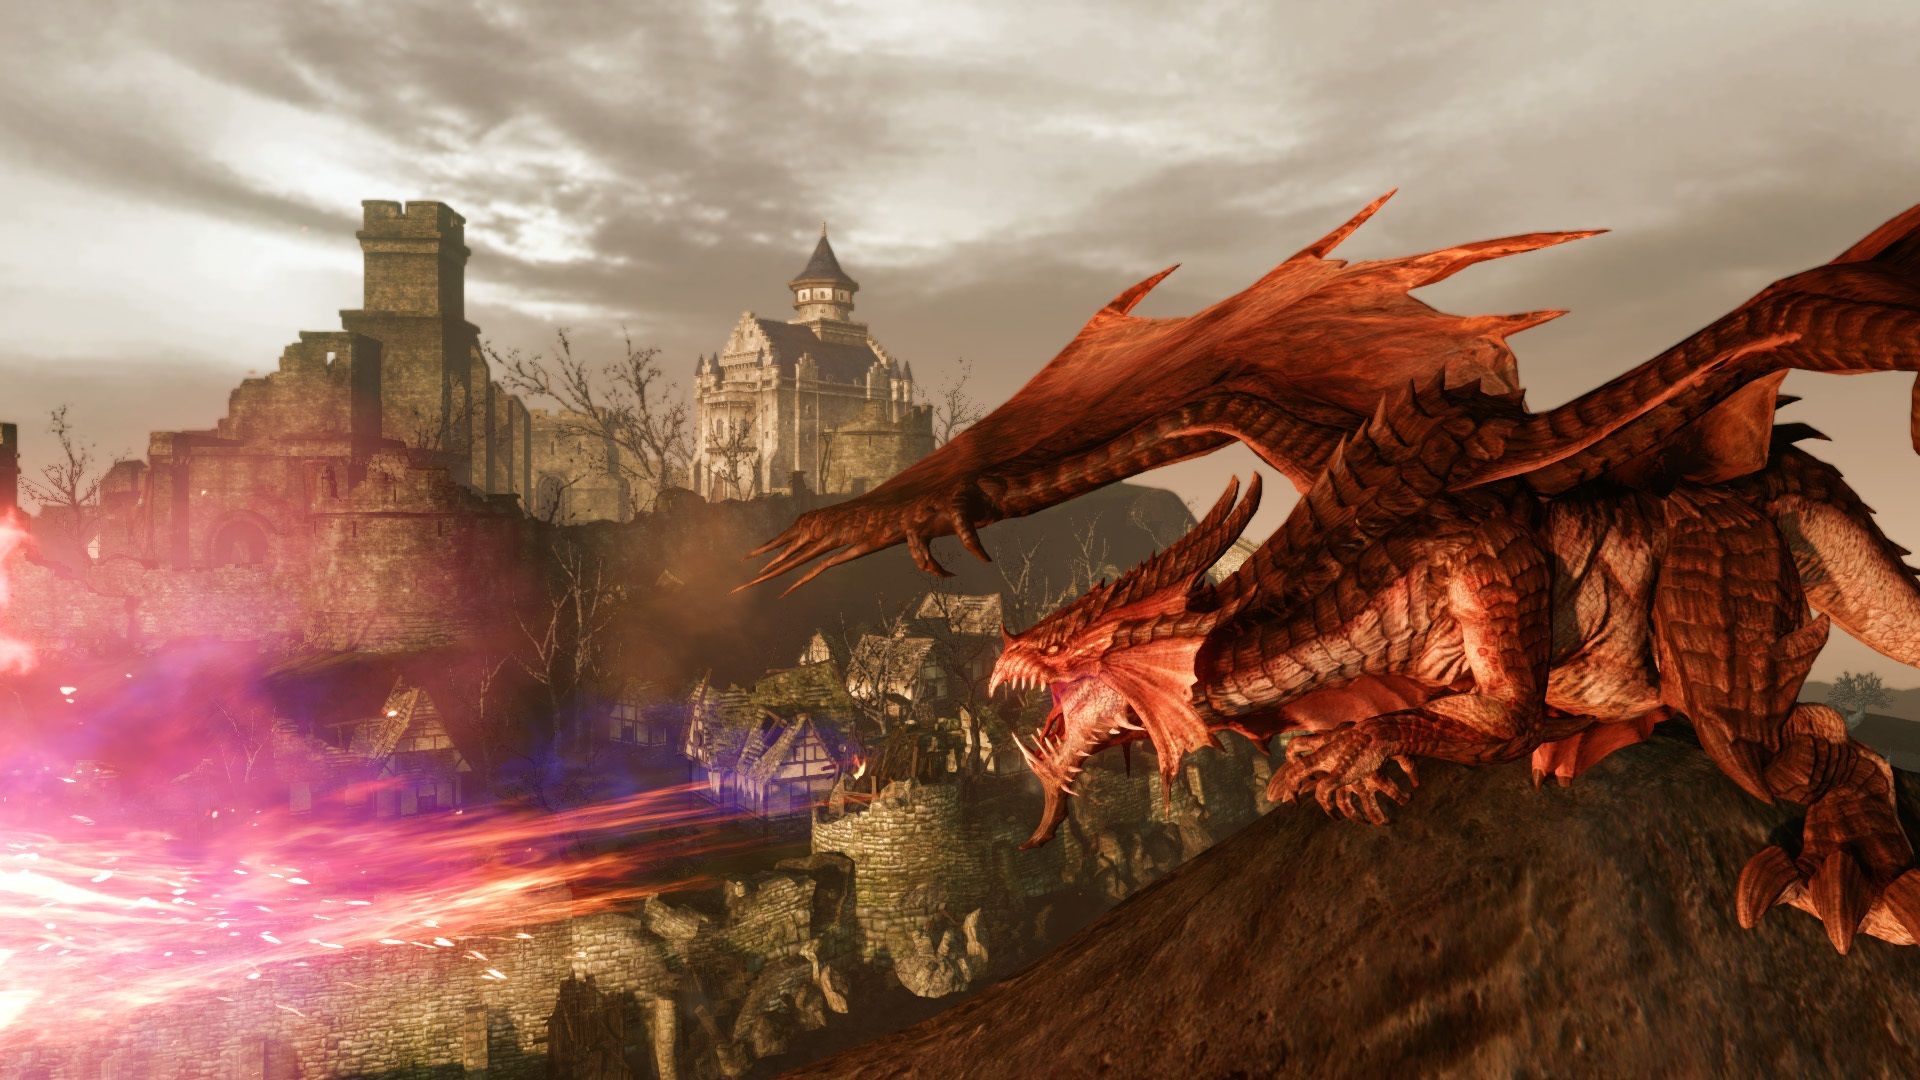 Най -добрите безплатни компютърни игри: Archeage. Изображението показва дракон, гледащ надолу на селище от хълм